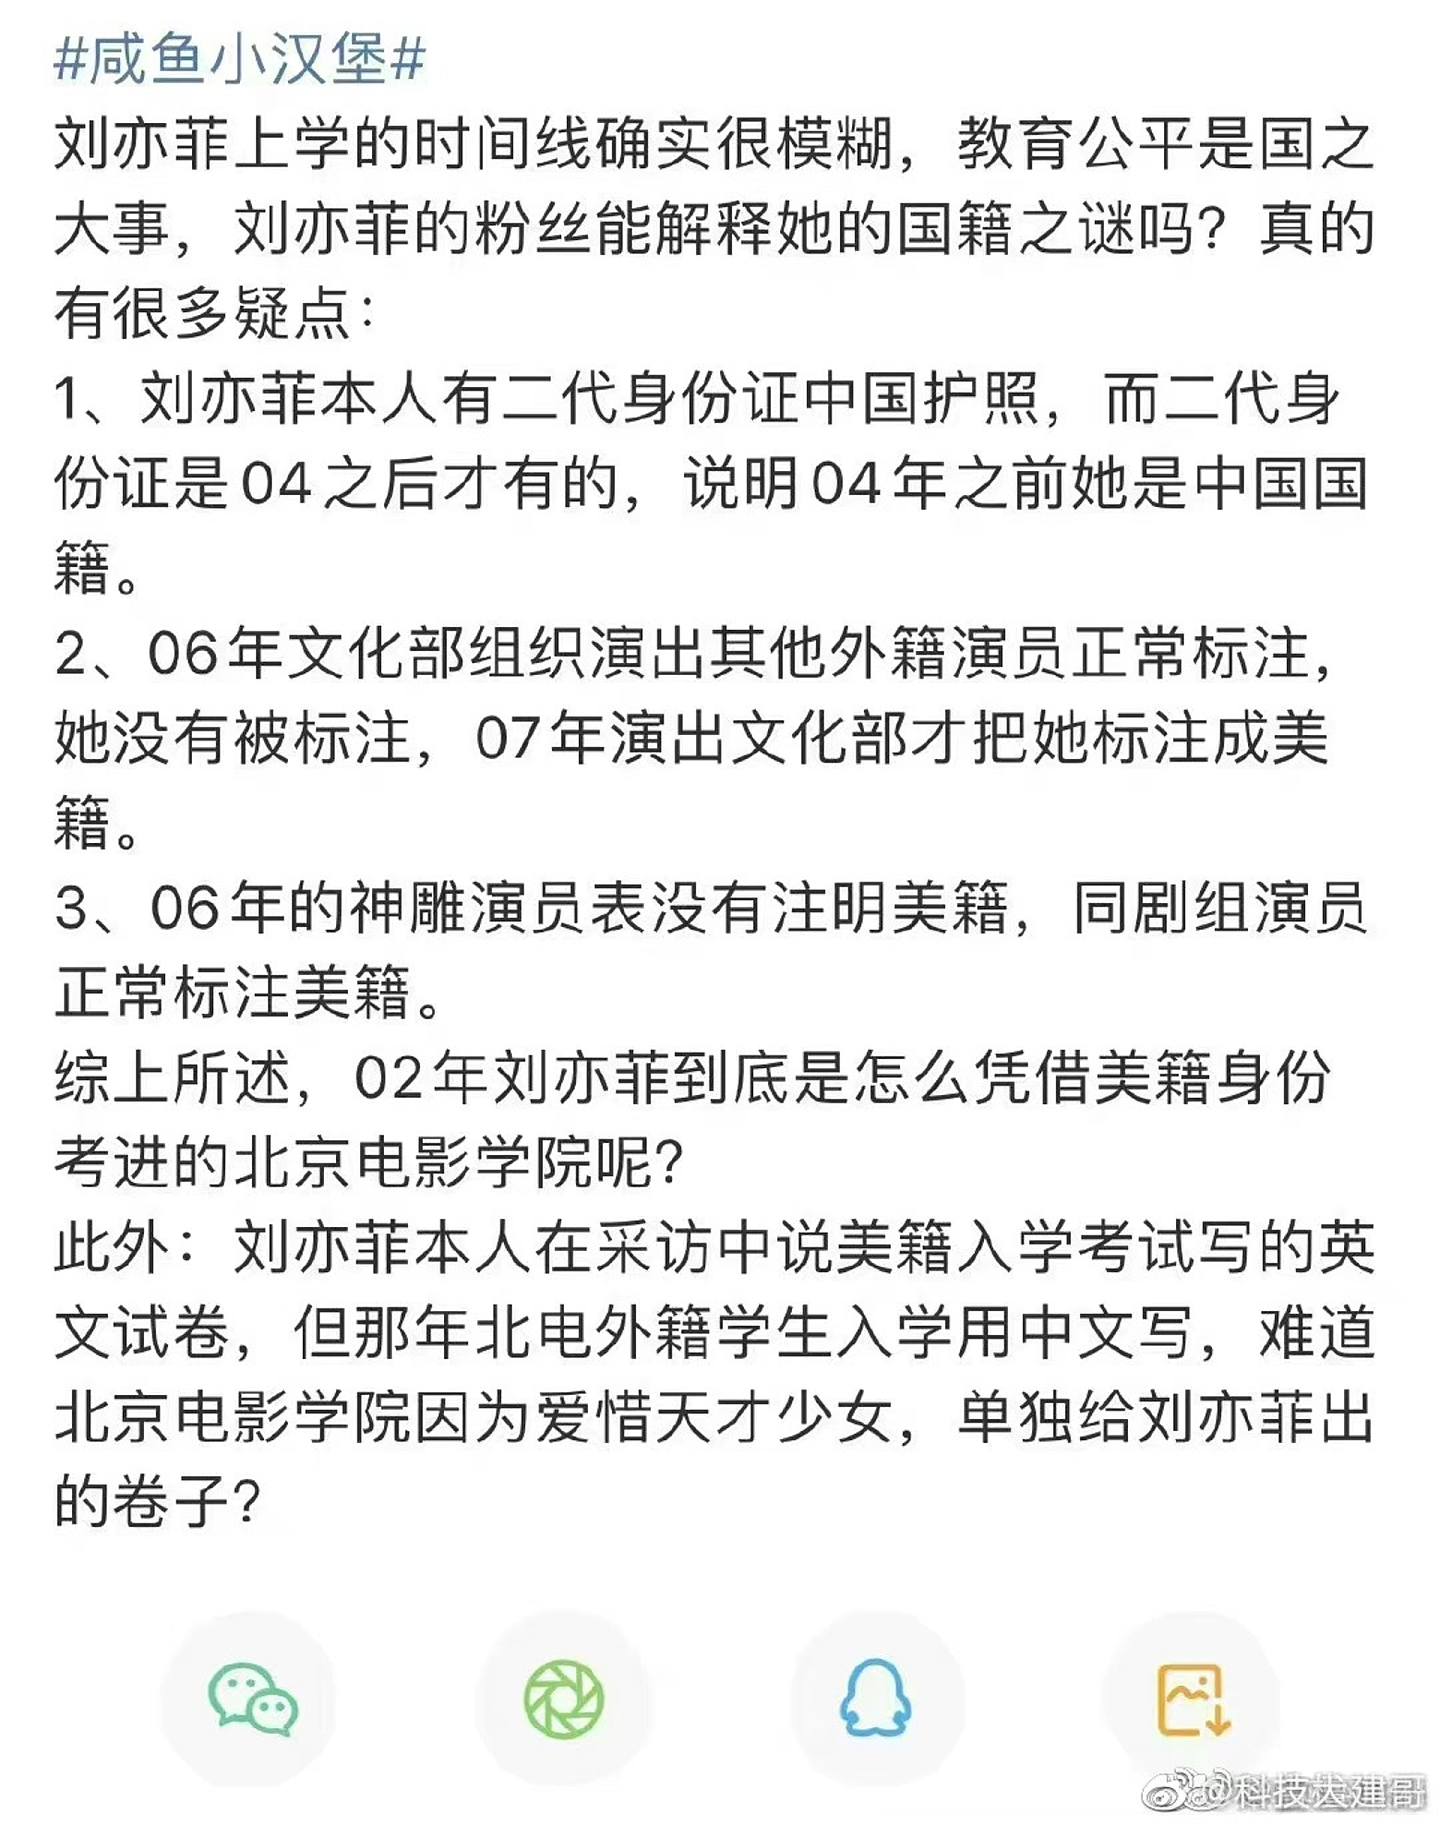 網民質疑劉亦菲如何用美籍身份「破格」錄取。（微博）